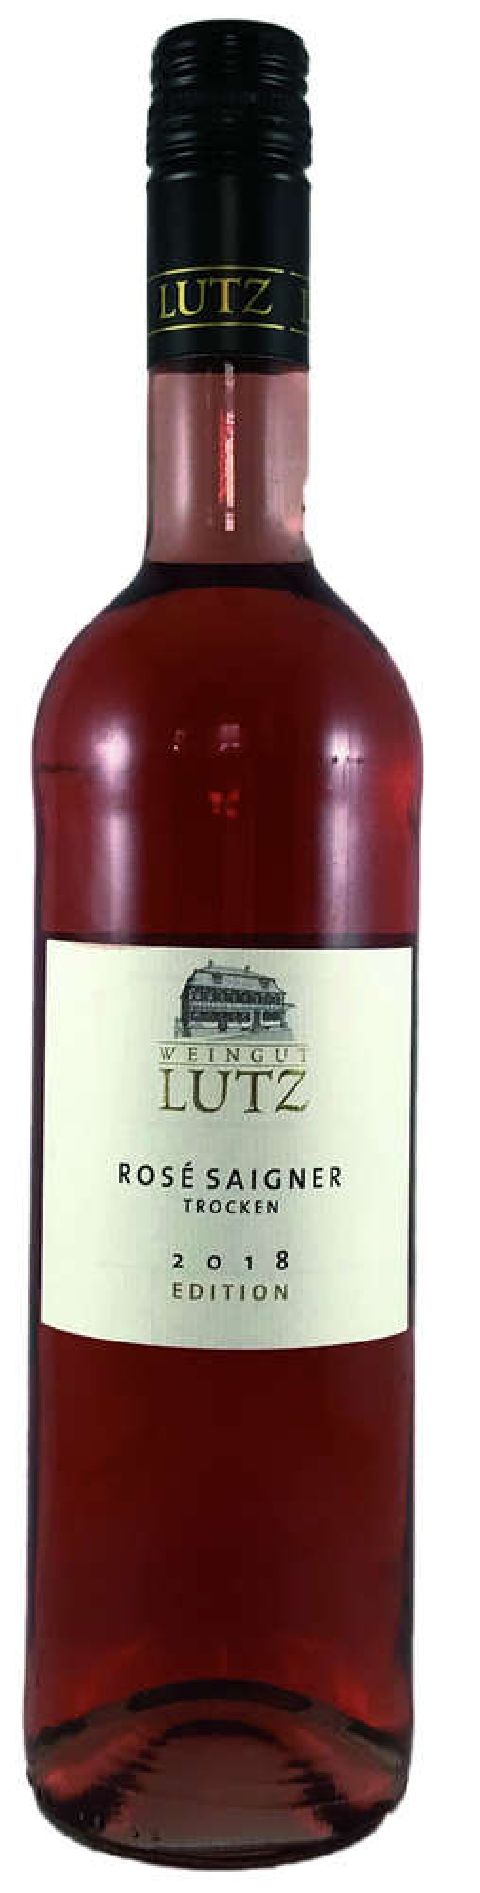 2021 Rosé Saigner trocken 0,75 L Edition - Weingut Lutz